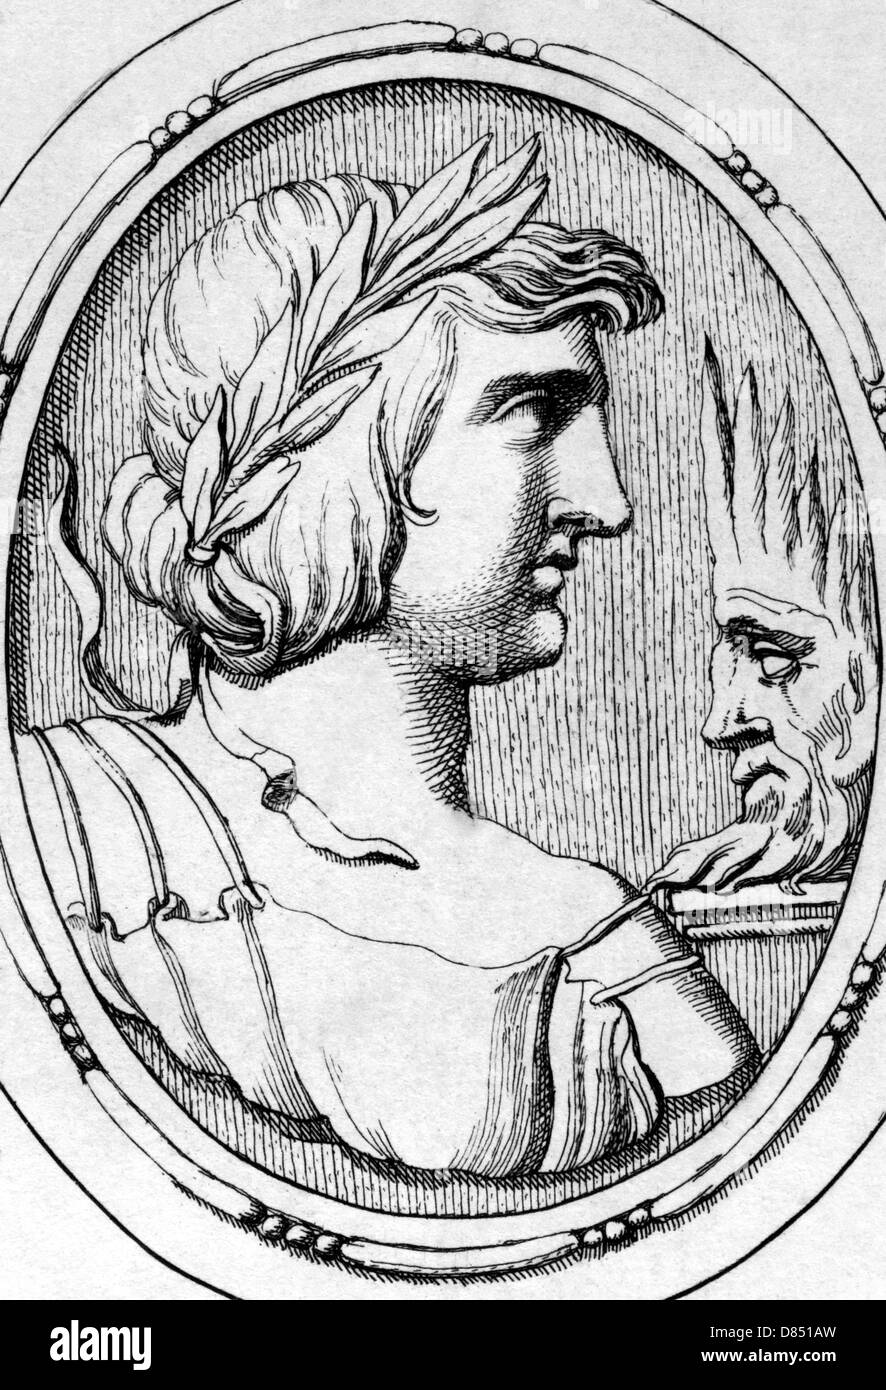 Publius Vergilius Maro (70BC-19BC) on engraving from 1685. Ancient Roman poet. Stock Photo